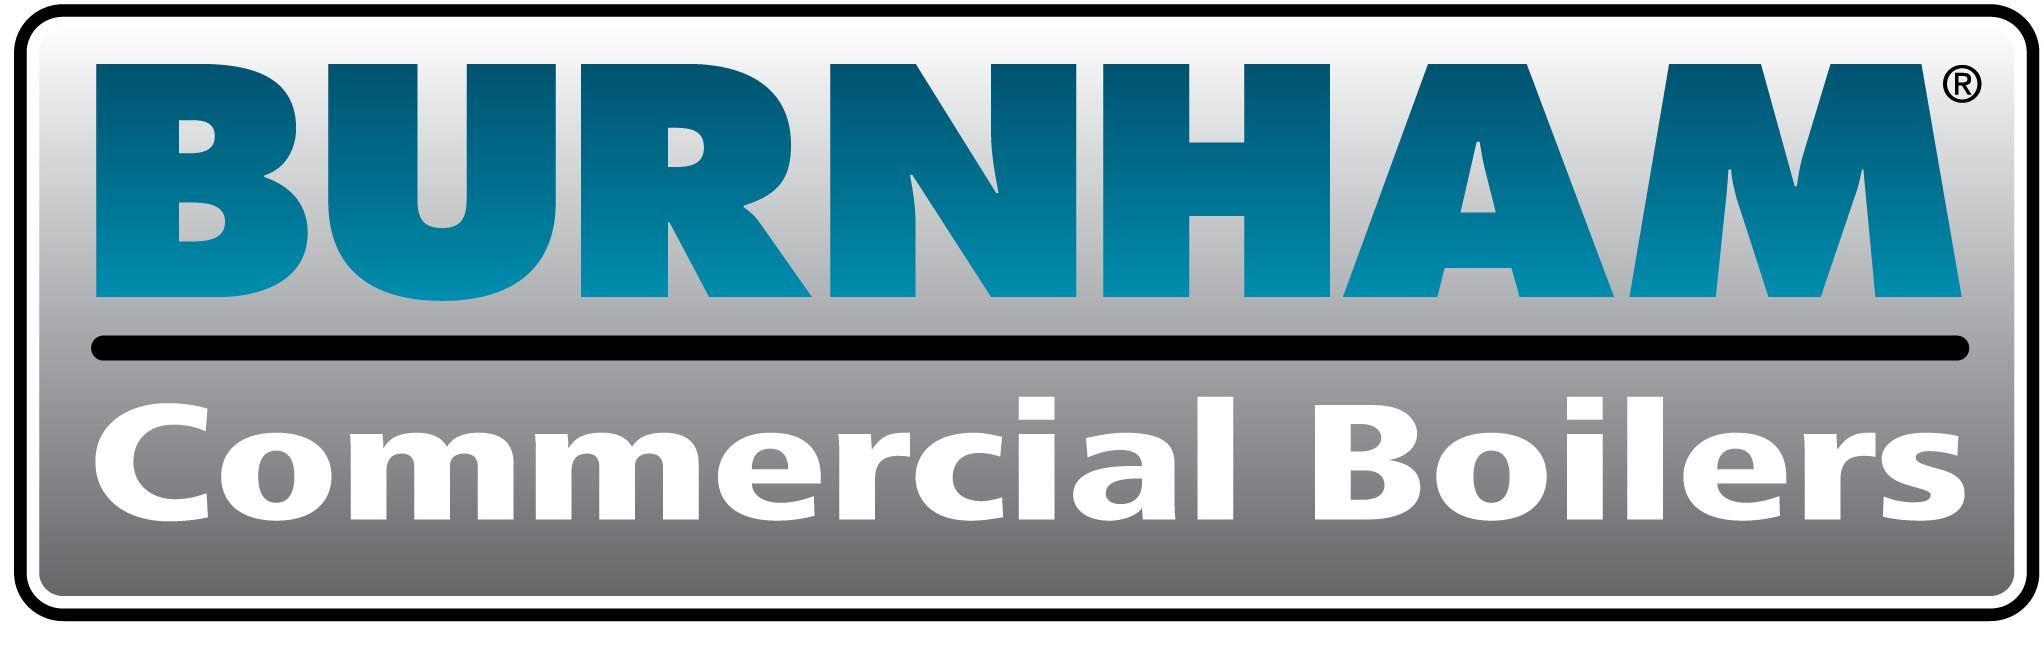 Burnham Boiler Logo - Burnham Commercial Boilers > BSI Mechanical, Inc